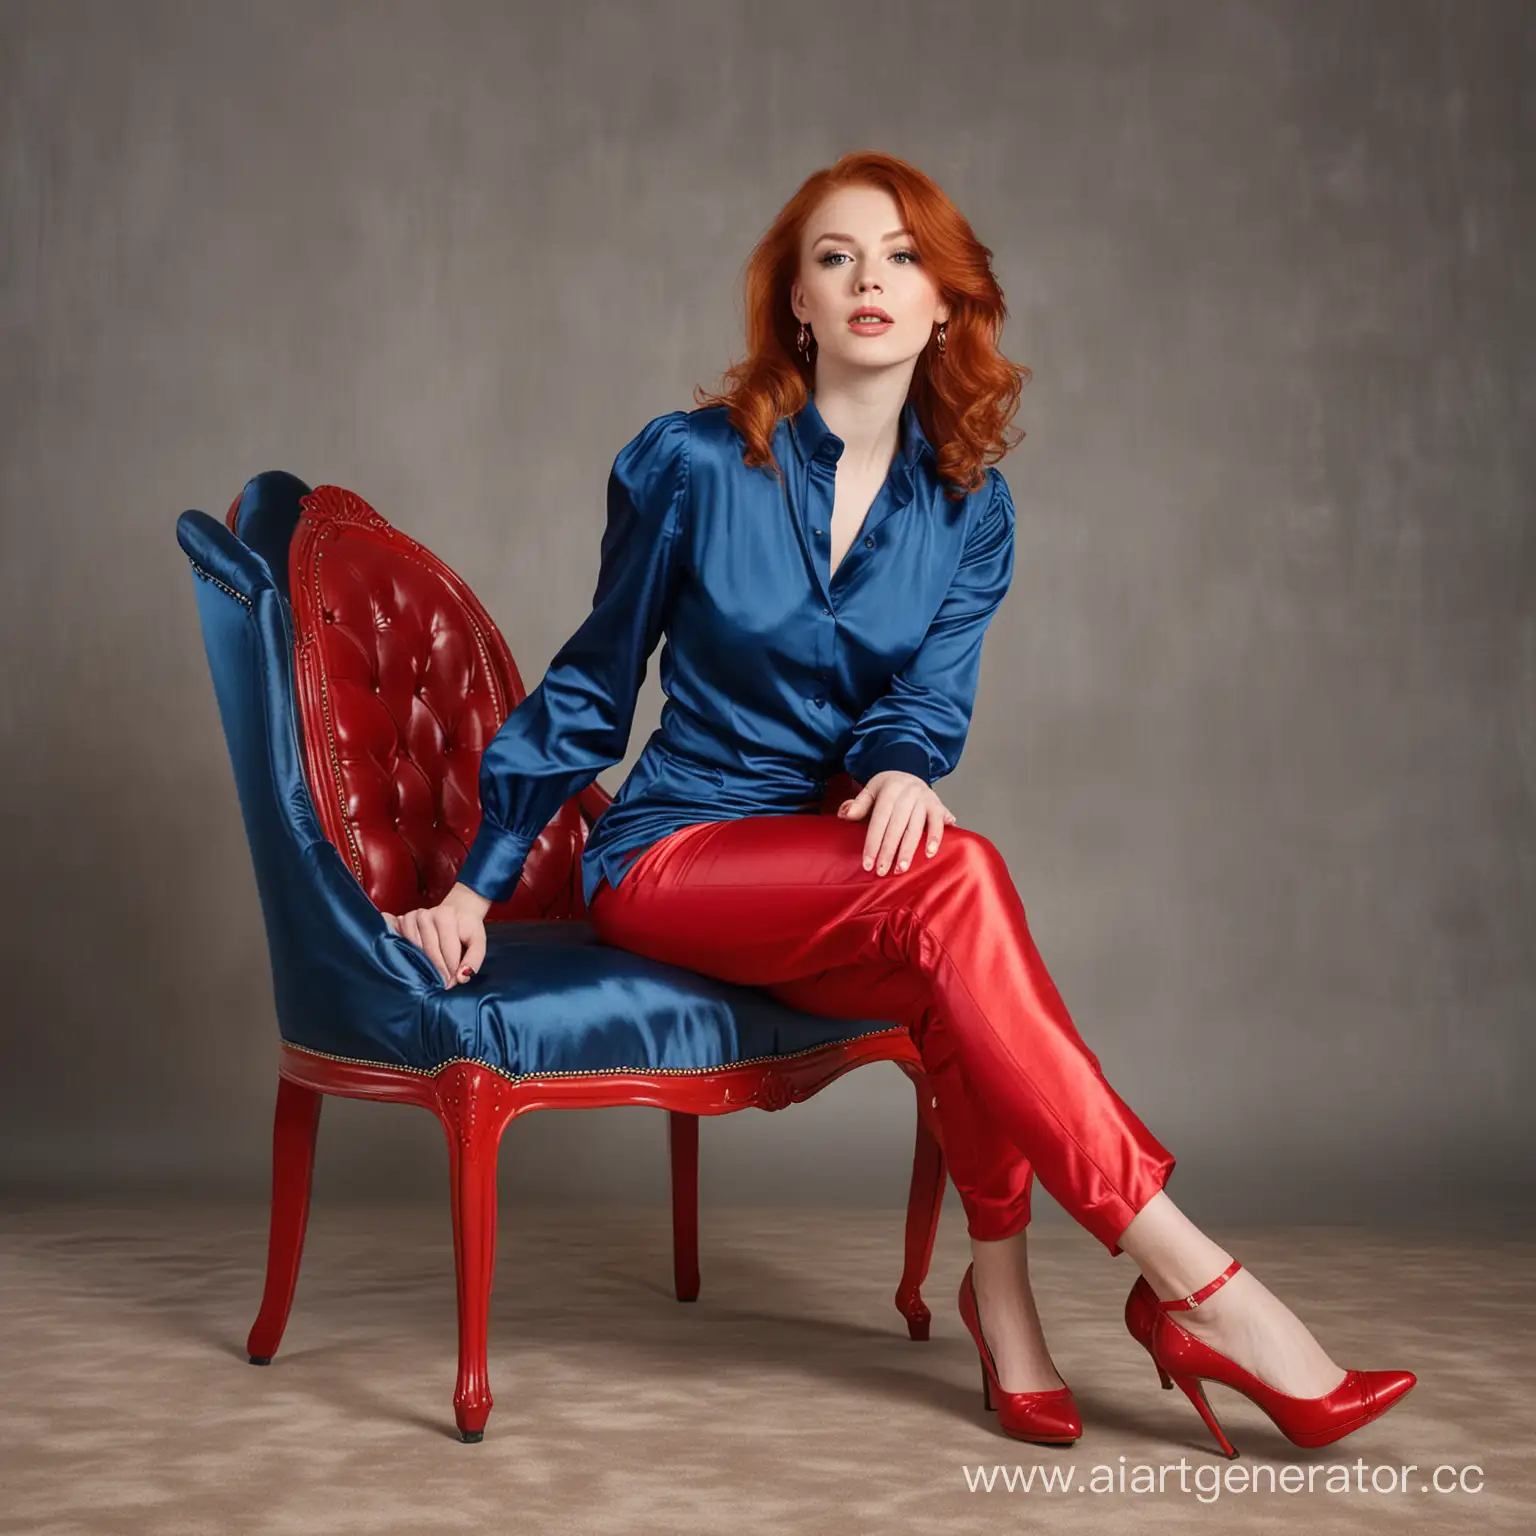 Redhead-Girl-in-Stylish-Attire-Sitting-on-Chair